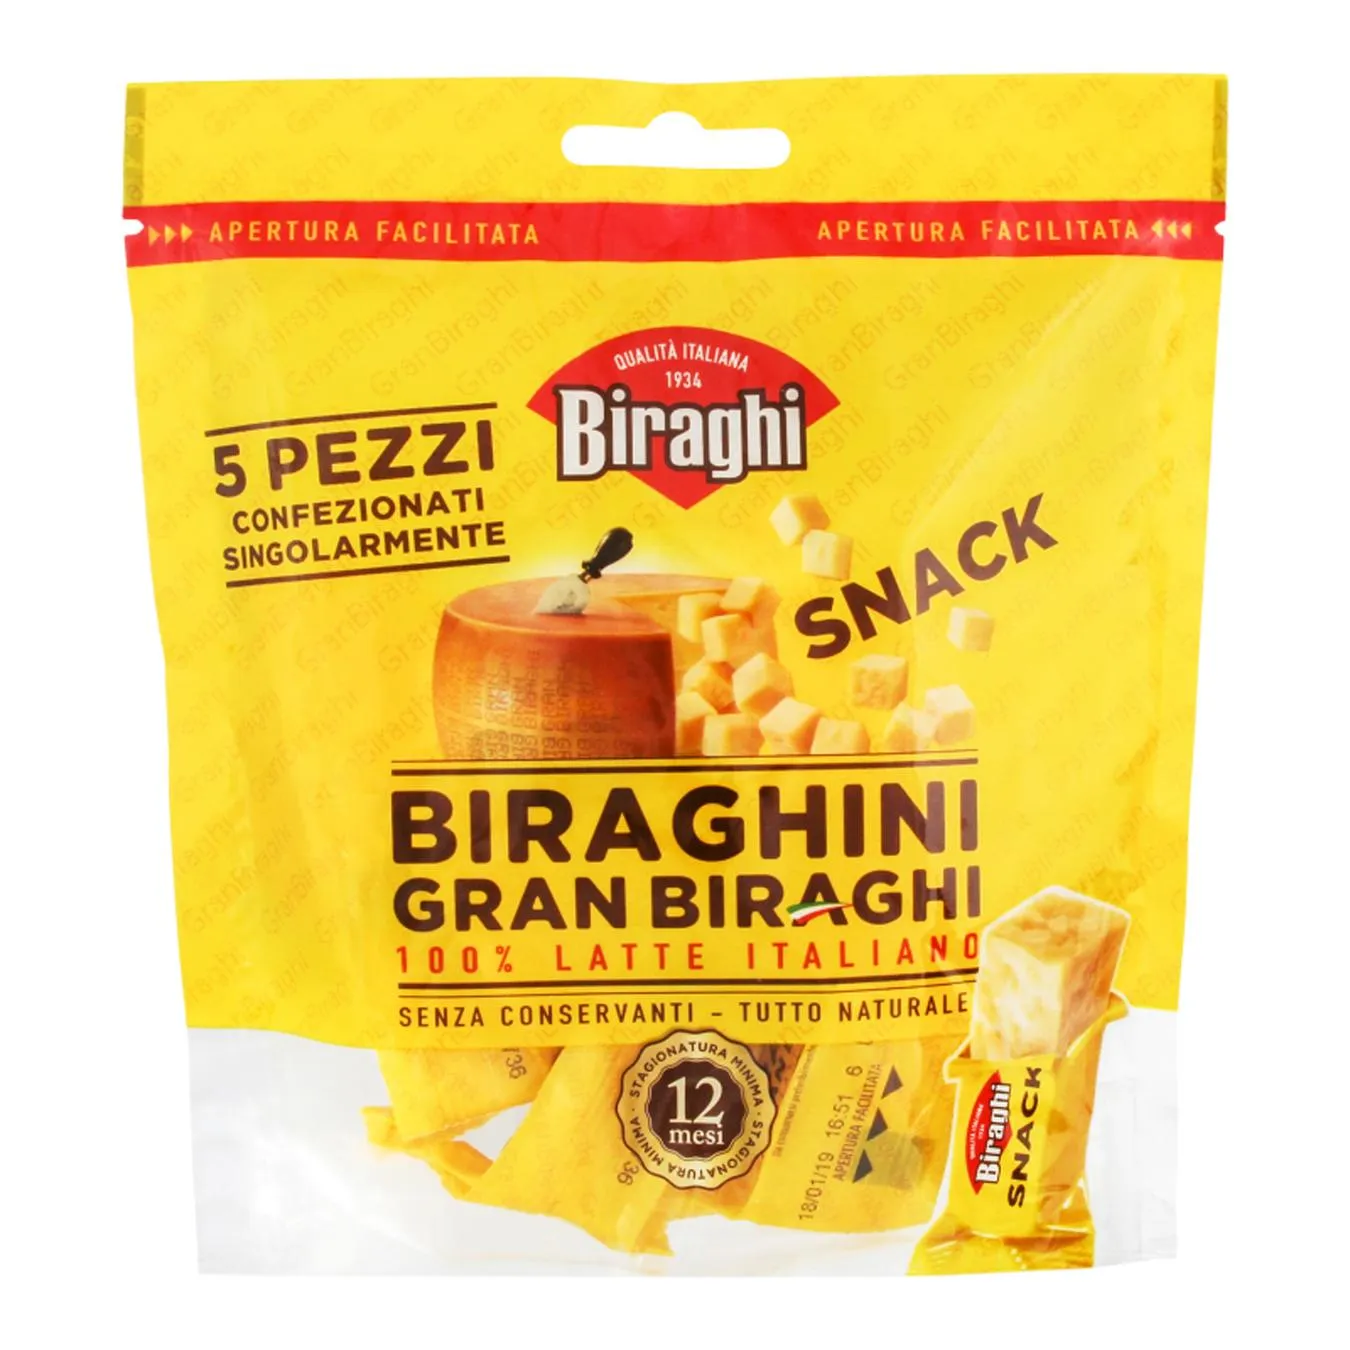 Cheese Biraghi Gran Biraghi 12-14 months snack 100g